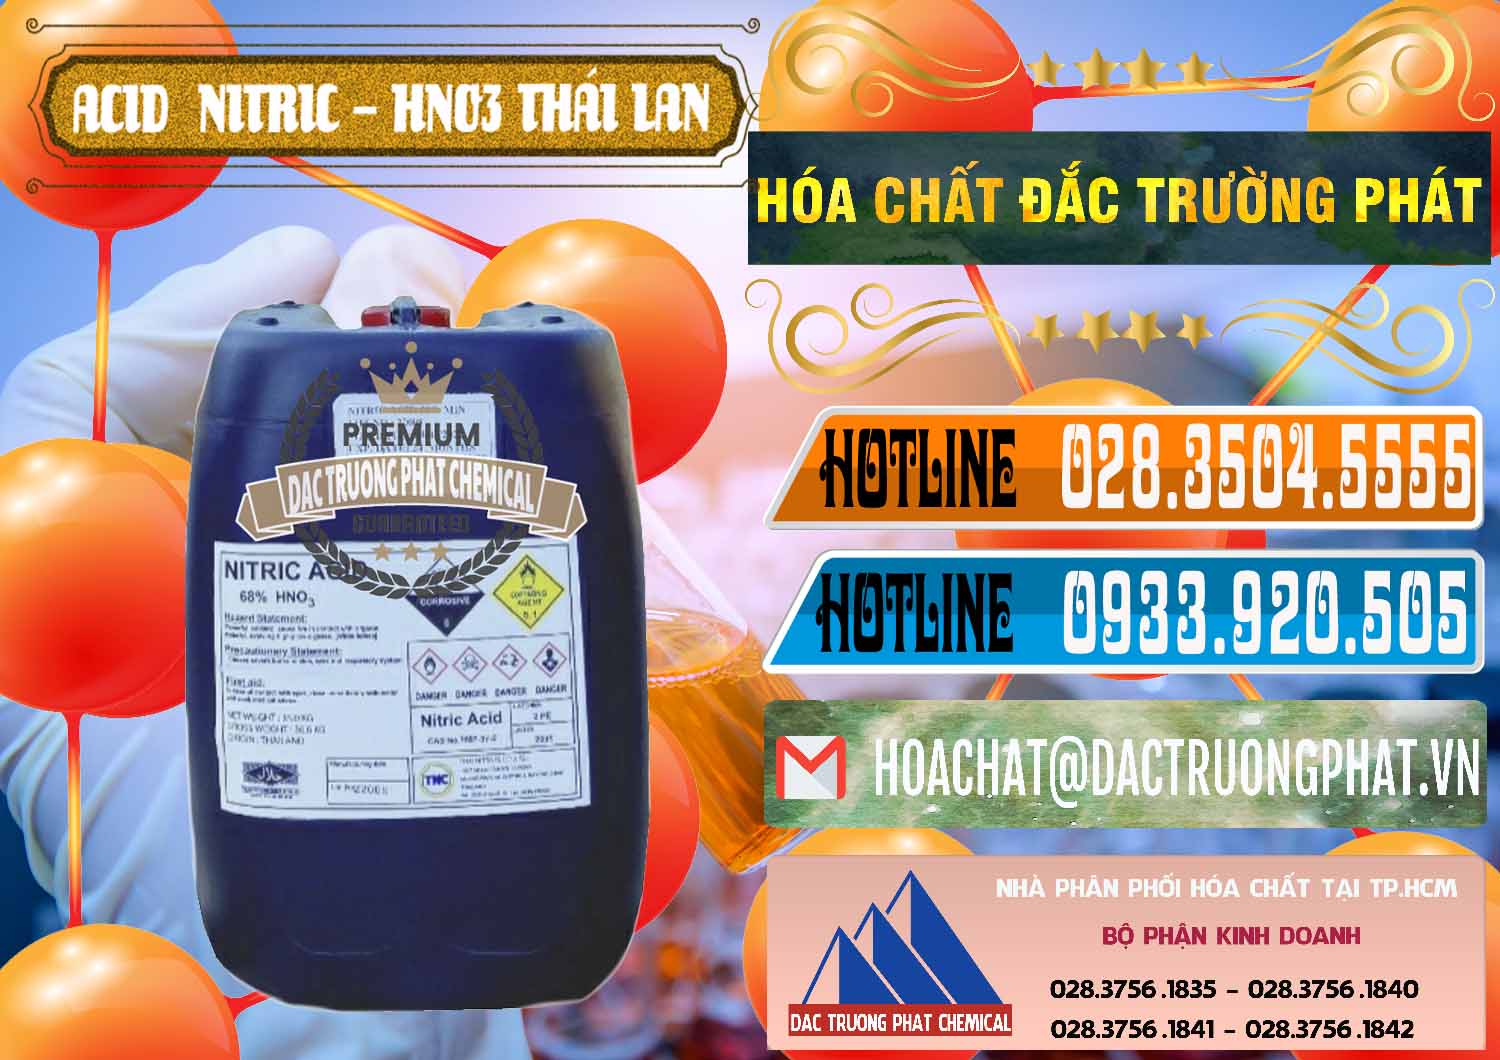 Nơi chuyên bán - cung cấp Acid Nitric – Axit Nitric HNO3 Thái Lan Thailand - 0344 - Đơn vị chuyên nhập khẩu và phân phối hóa chất tại TP.HCM - stmp.net